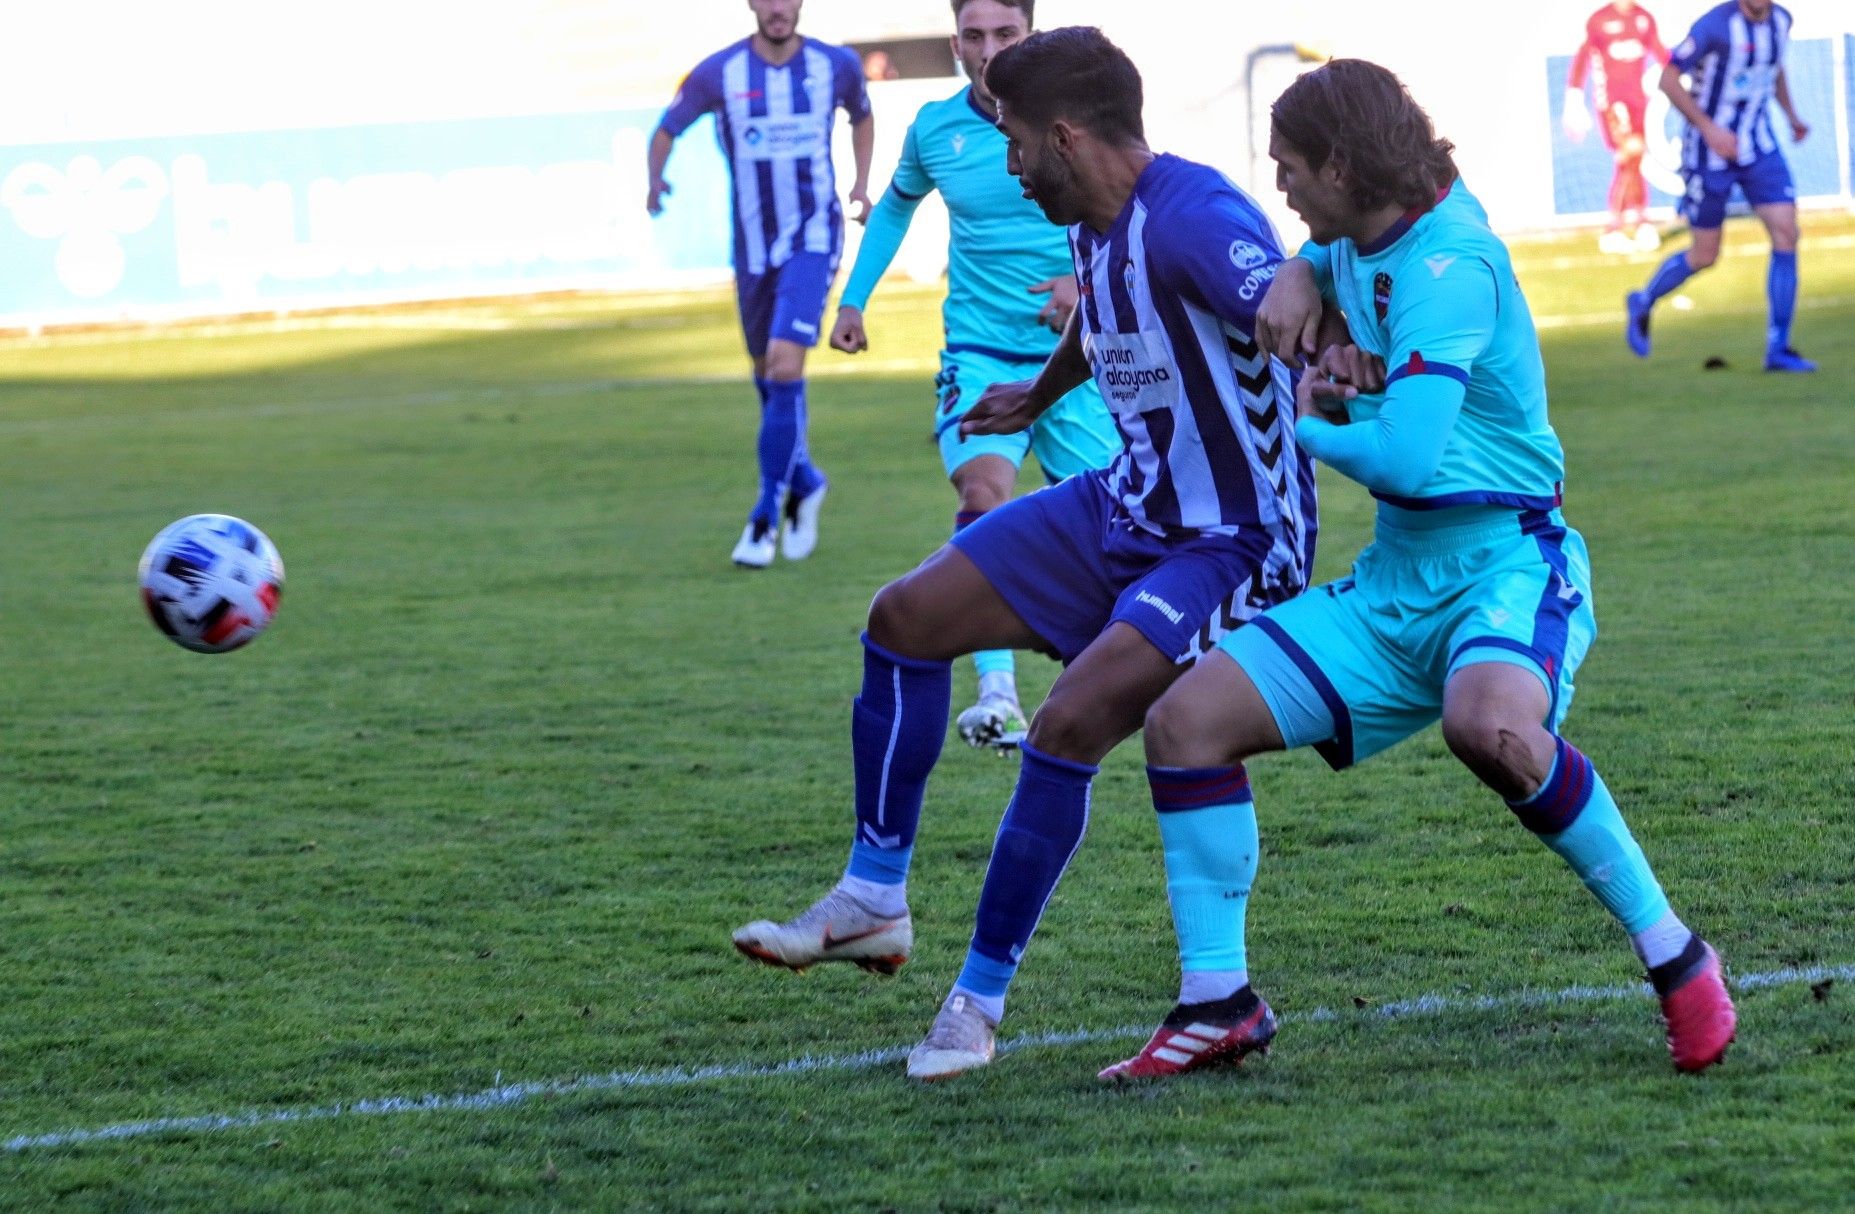 El Alcoyano se anota su primera victoria de la temporada (1-0)